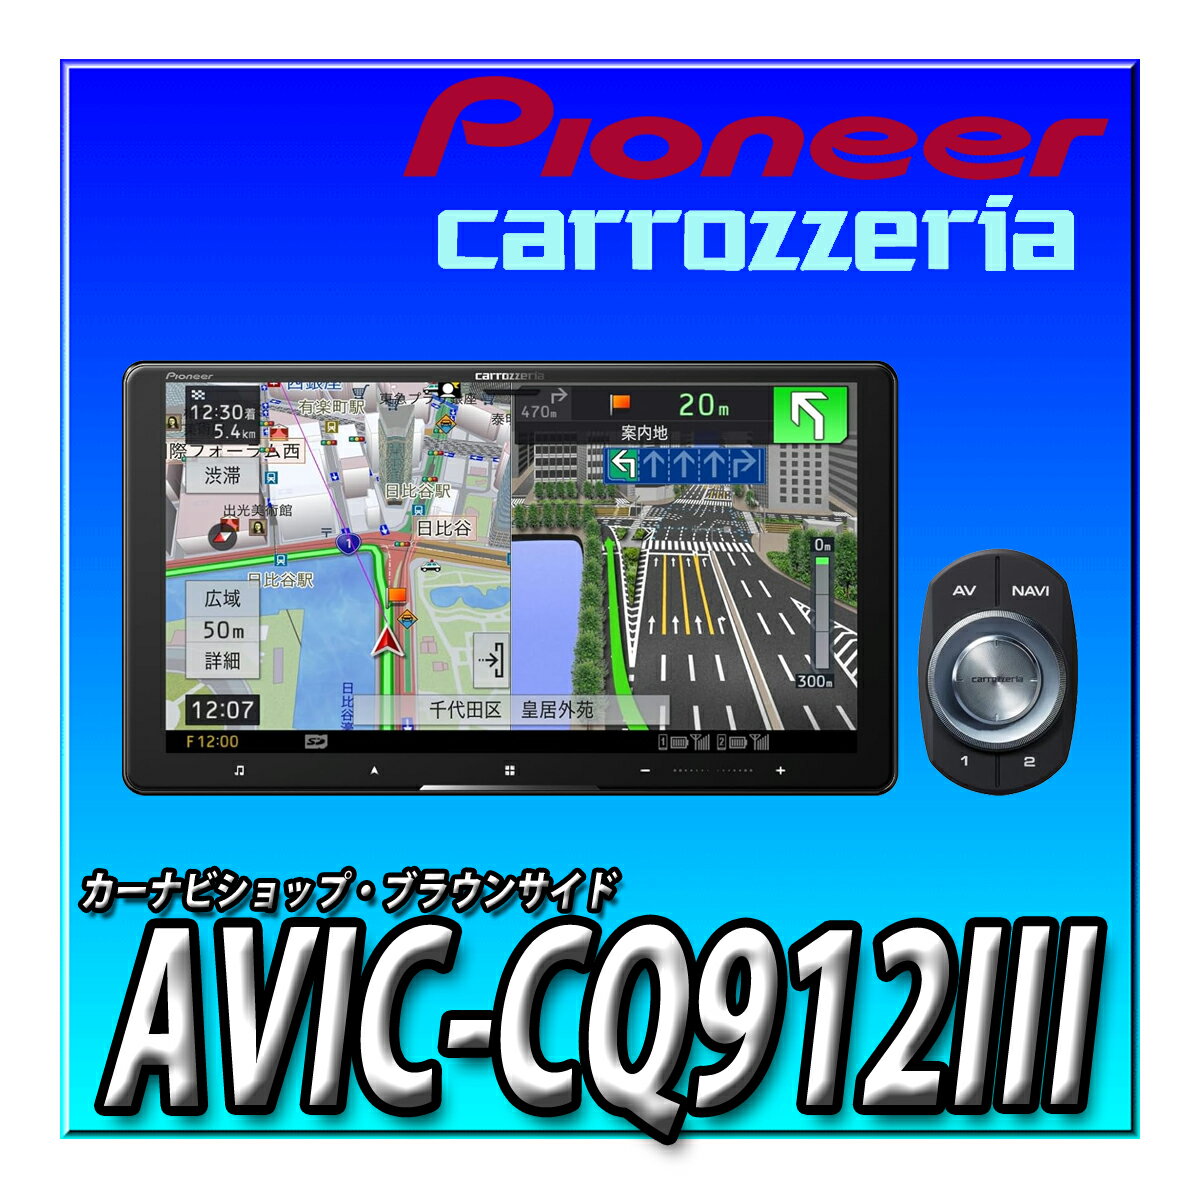 AVIC-CQ912III 9インチ サイバーナビ 無料地図更新 フルセグ DVD CD Bluetooth SD USB ハイレゾ HD画質..